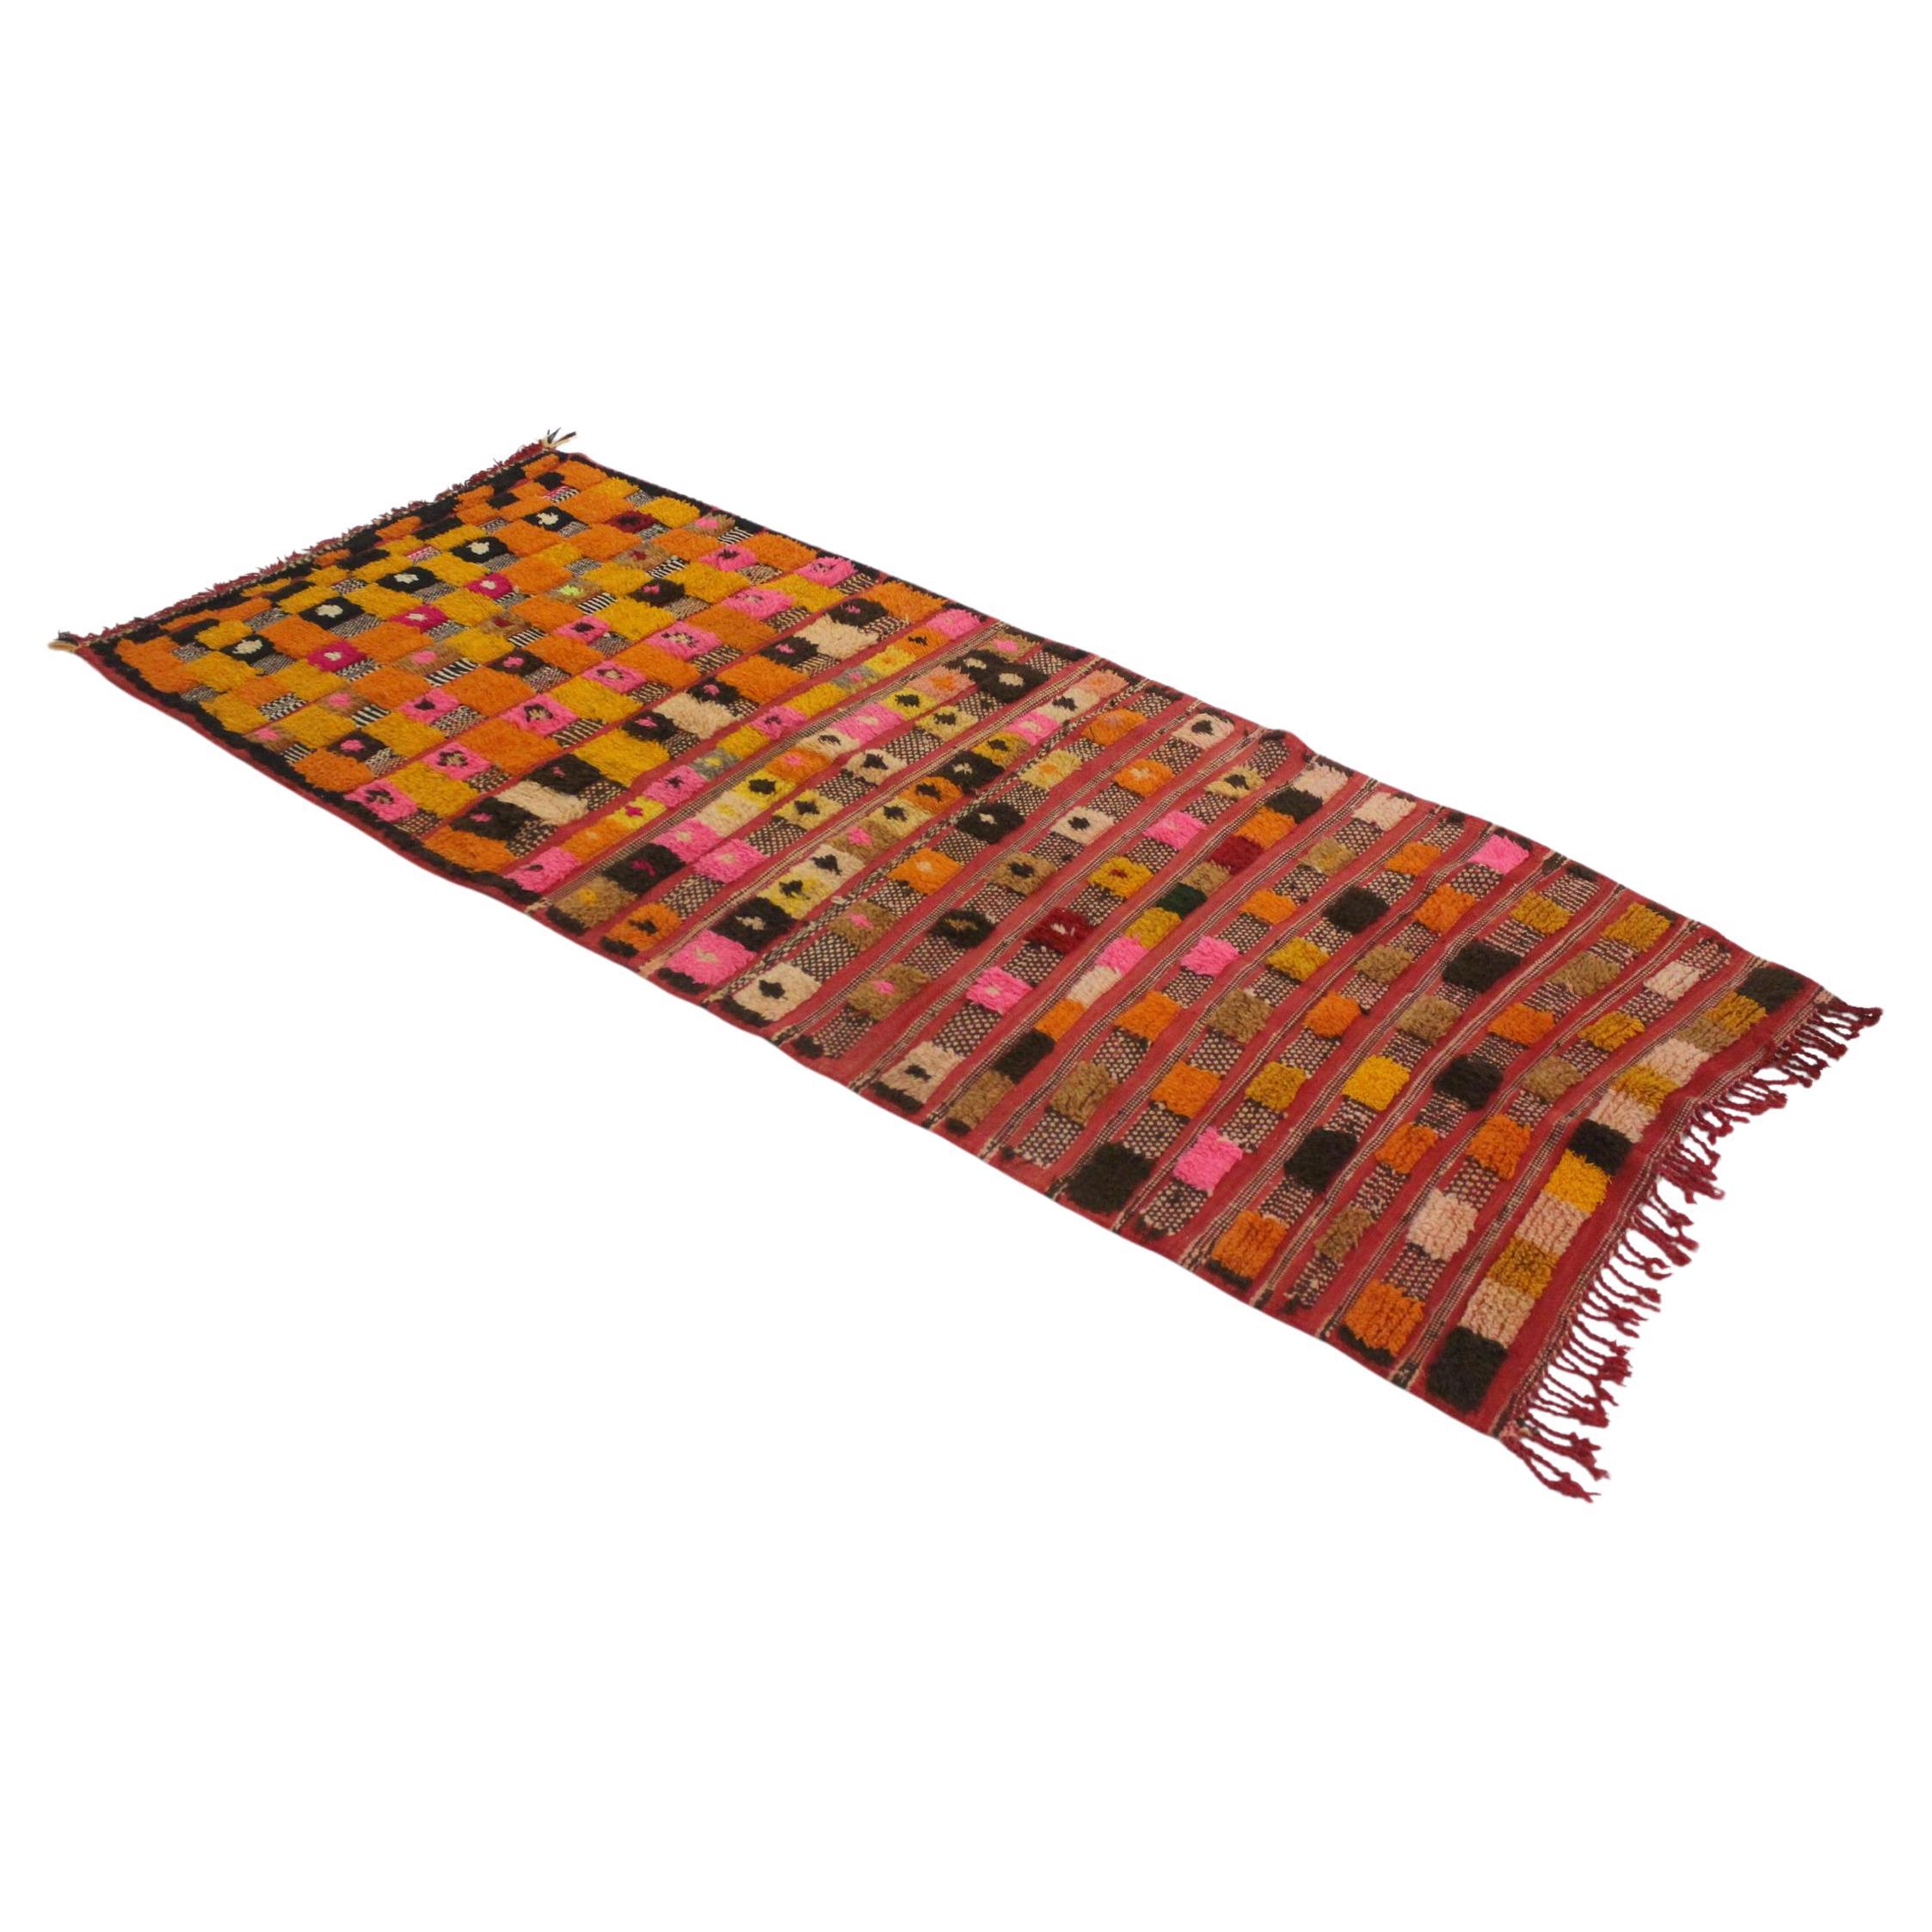 Vintage marokkanischen Azilal Teppich - Rot, orange, gelb - 3.3x7.7feet / 102x235cm